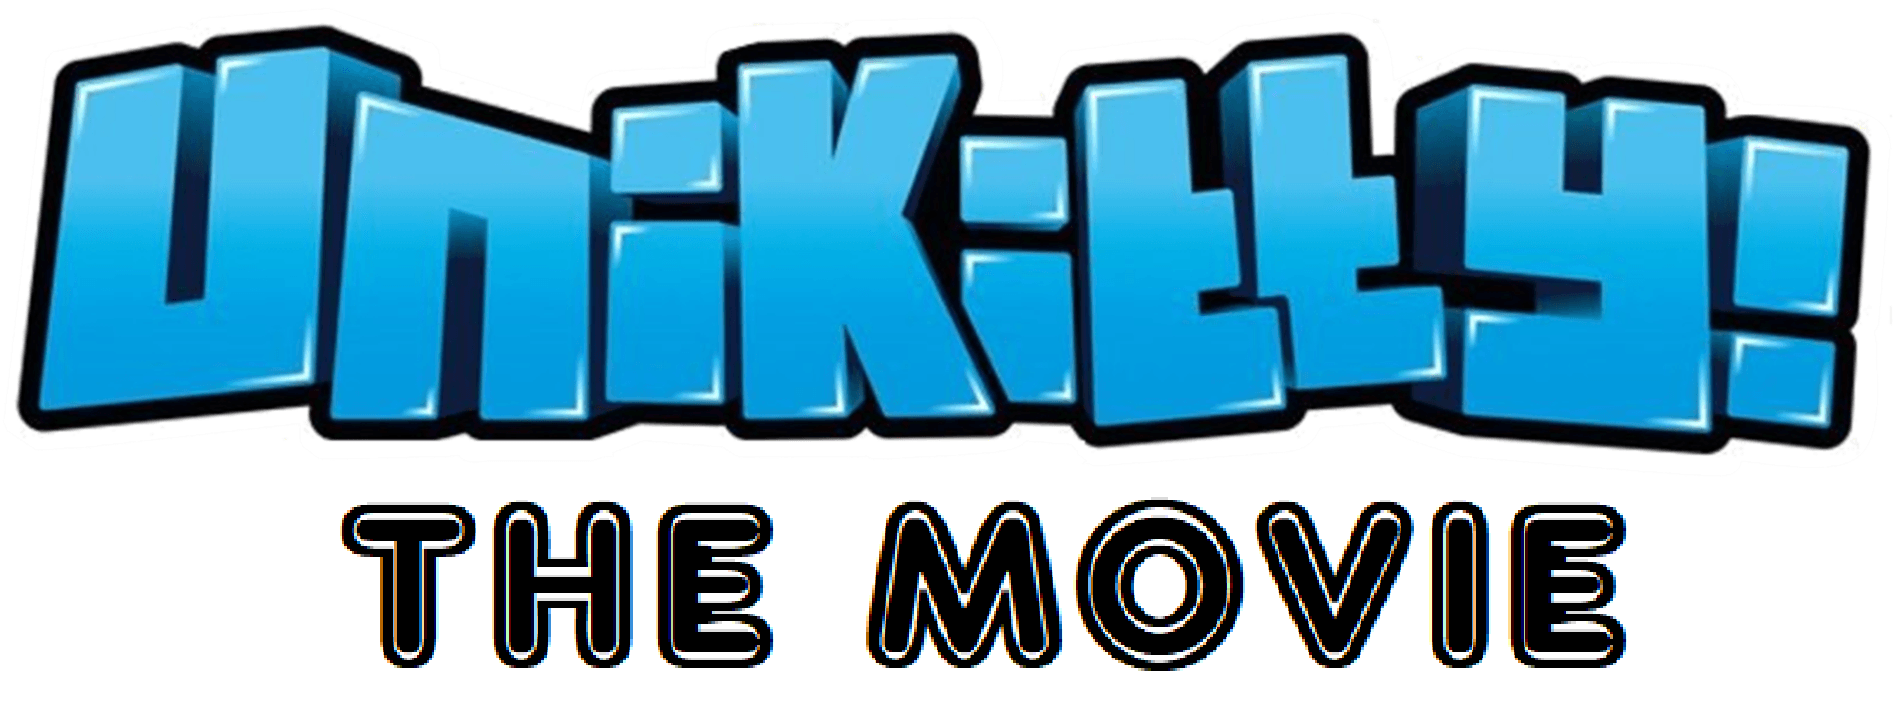 Unikitty Logo - Unikitty: The Movie